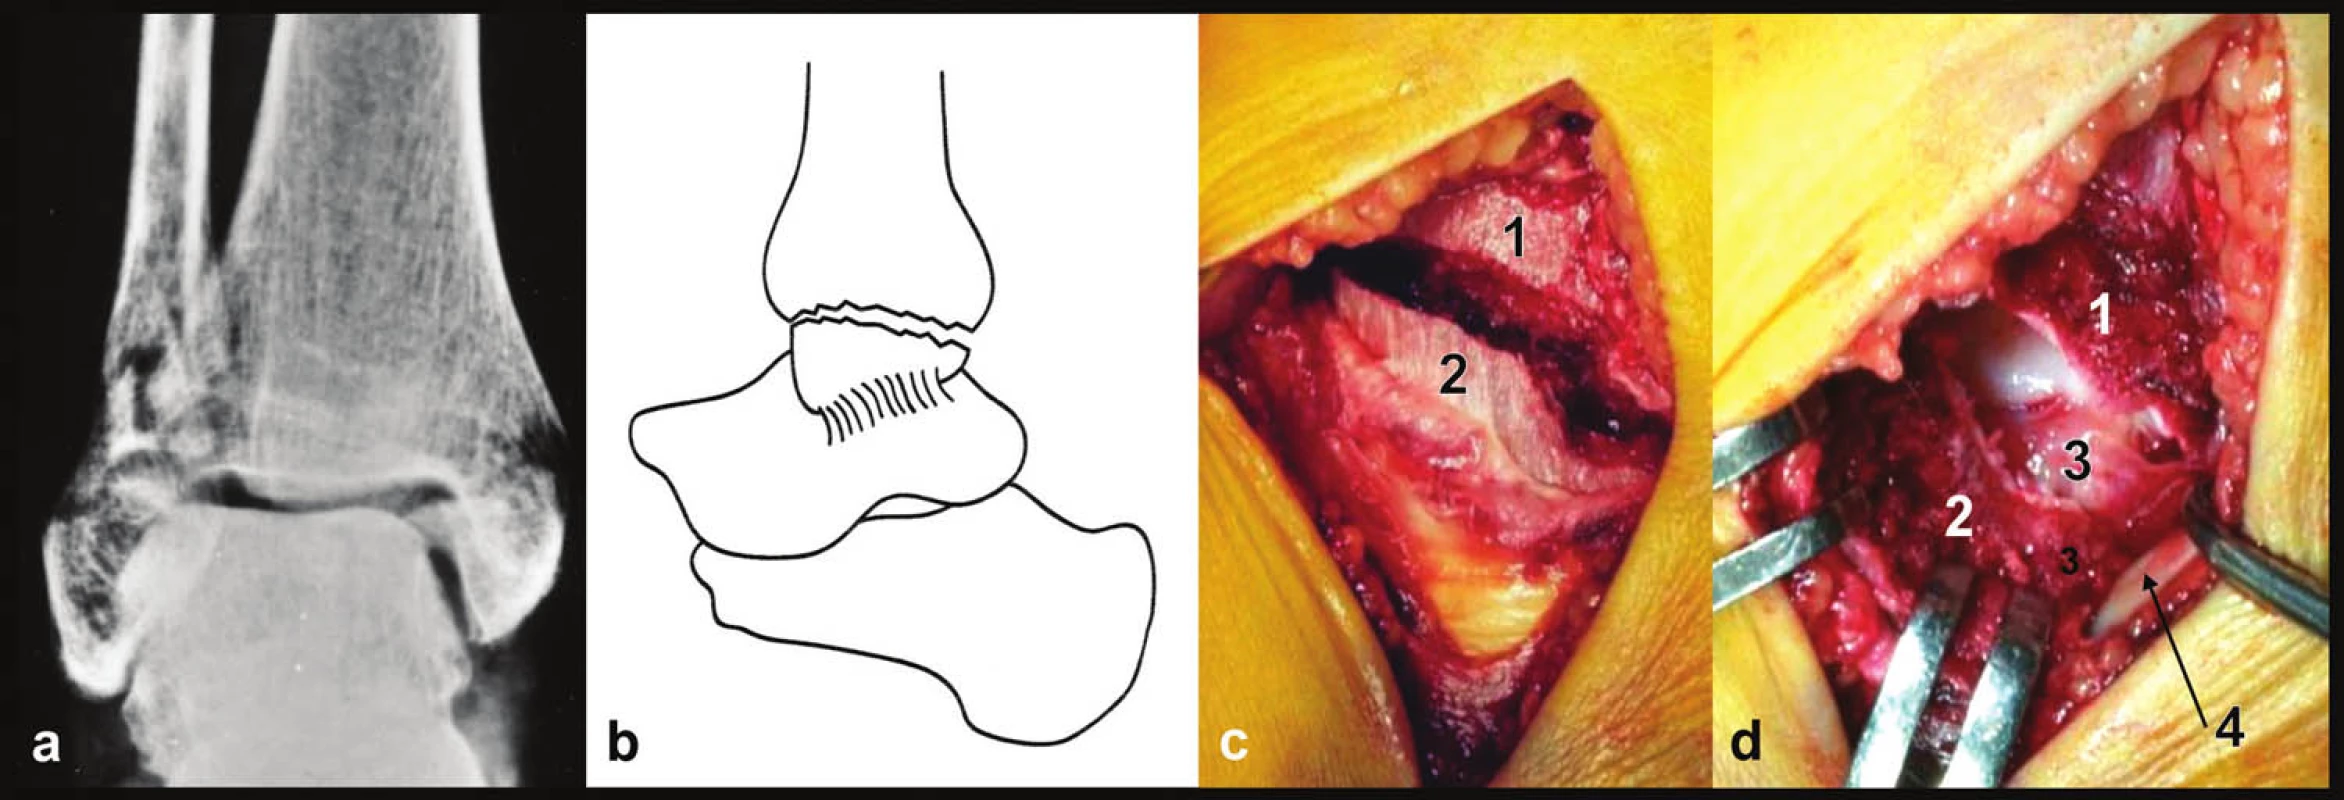 Zlomenina vnitřního kotníku, pravé hlezno a – rtg snímek, b – schéma, c – peroperační foto, d – peroperační foto, stav po odklopení vnitřního kotníku distálně, 1 – distální tibie, 2 – mediální kotník, 3 – hluboká tibiotalární vlákna deltového vazu, 4 – šlacha m. tibialis post.